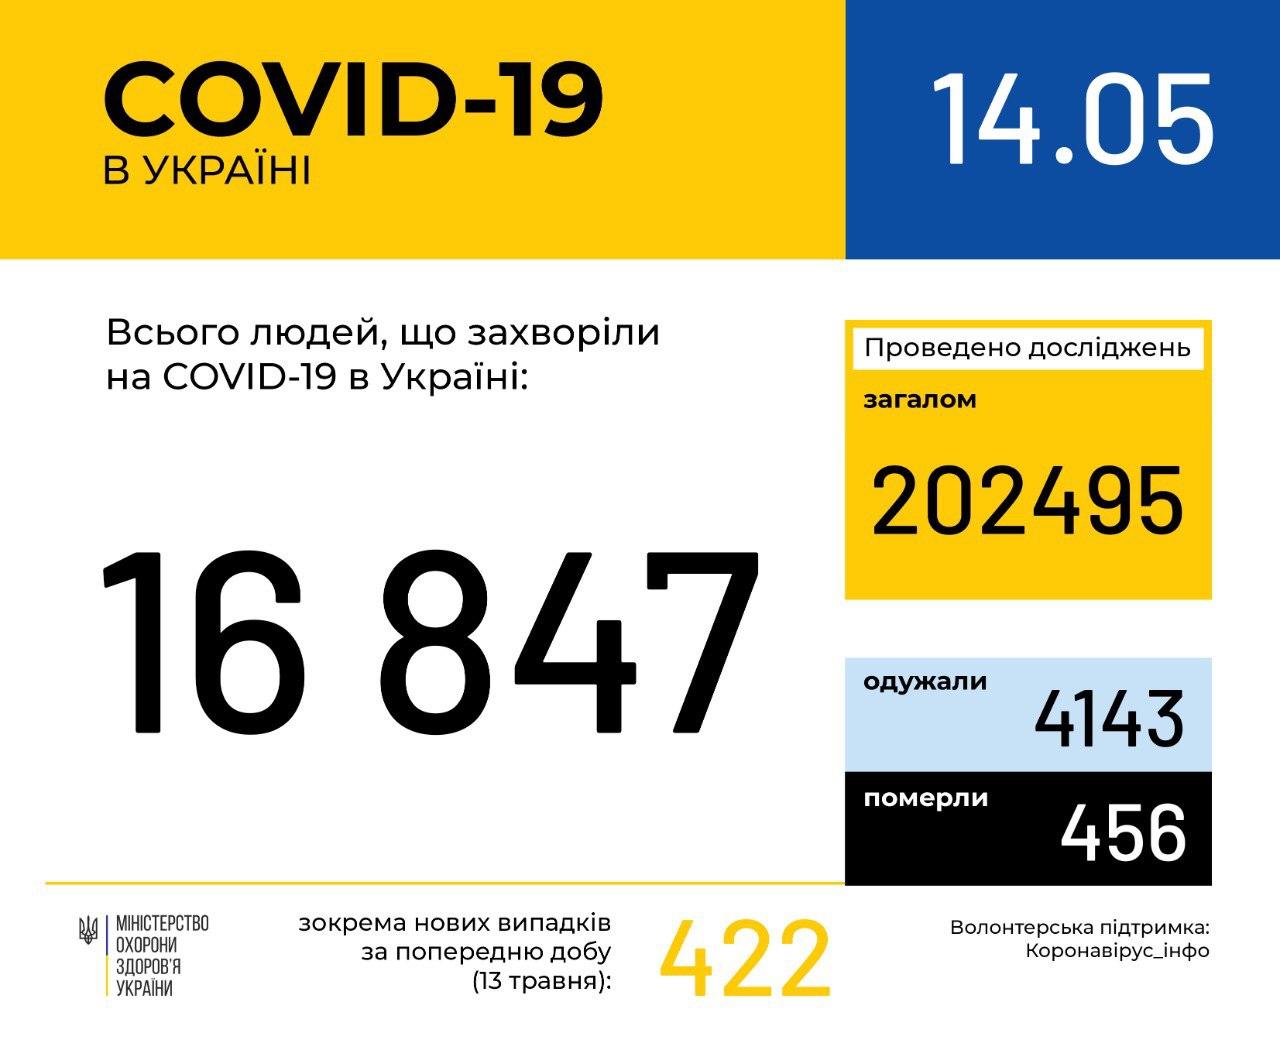 В Україні зафіксовано 16847 випадків коронавірусної хвороби COVID-19, - МОЗ